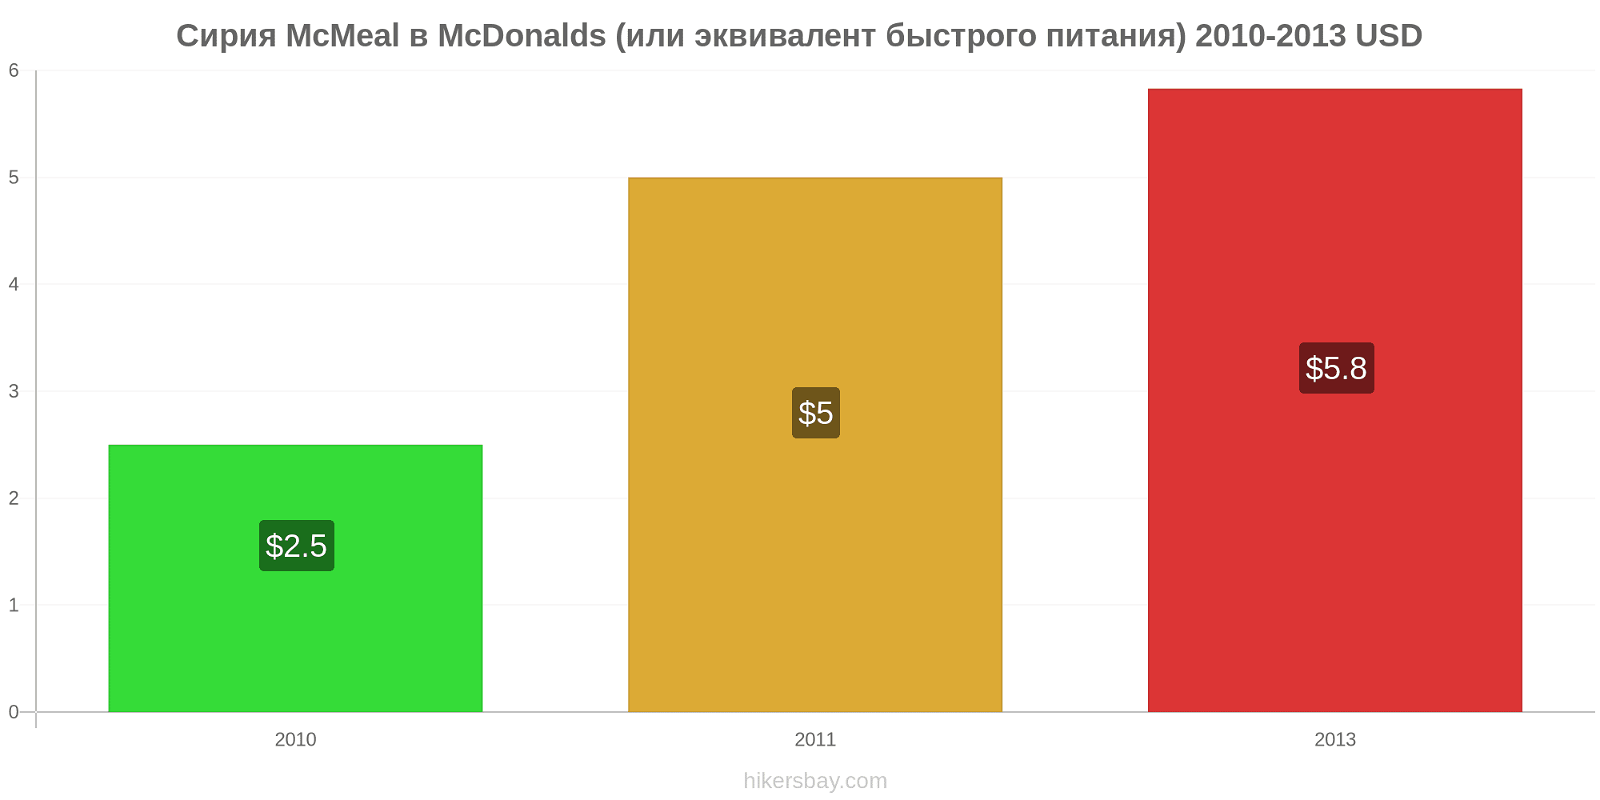 Сирия изменения цен McMeal в McDonalds (или эквивалент быстрого питания) hikersbay.com